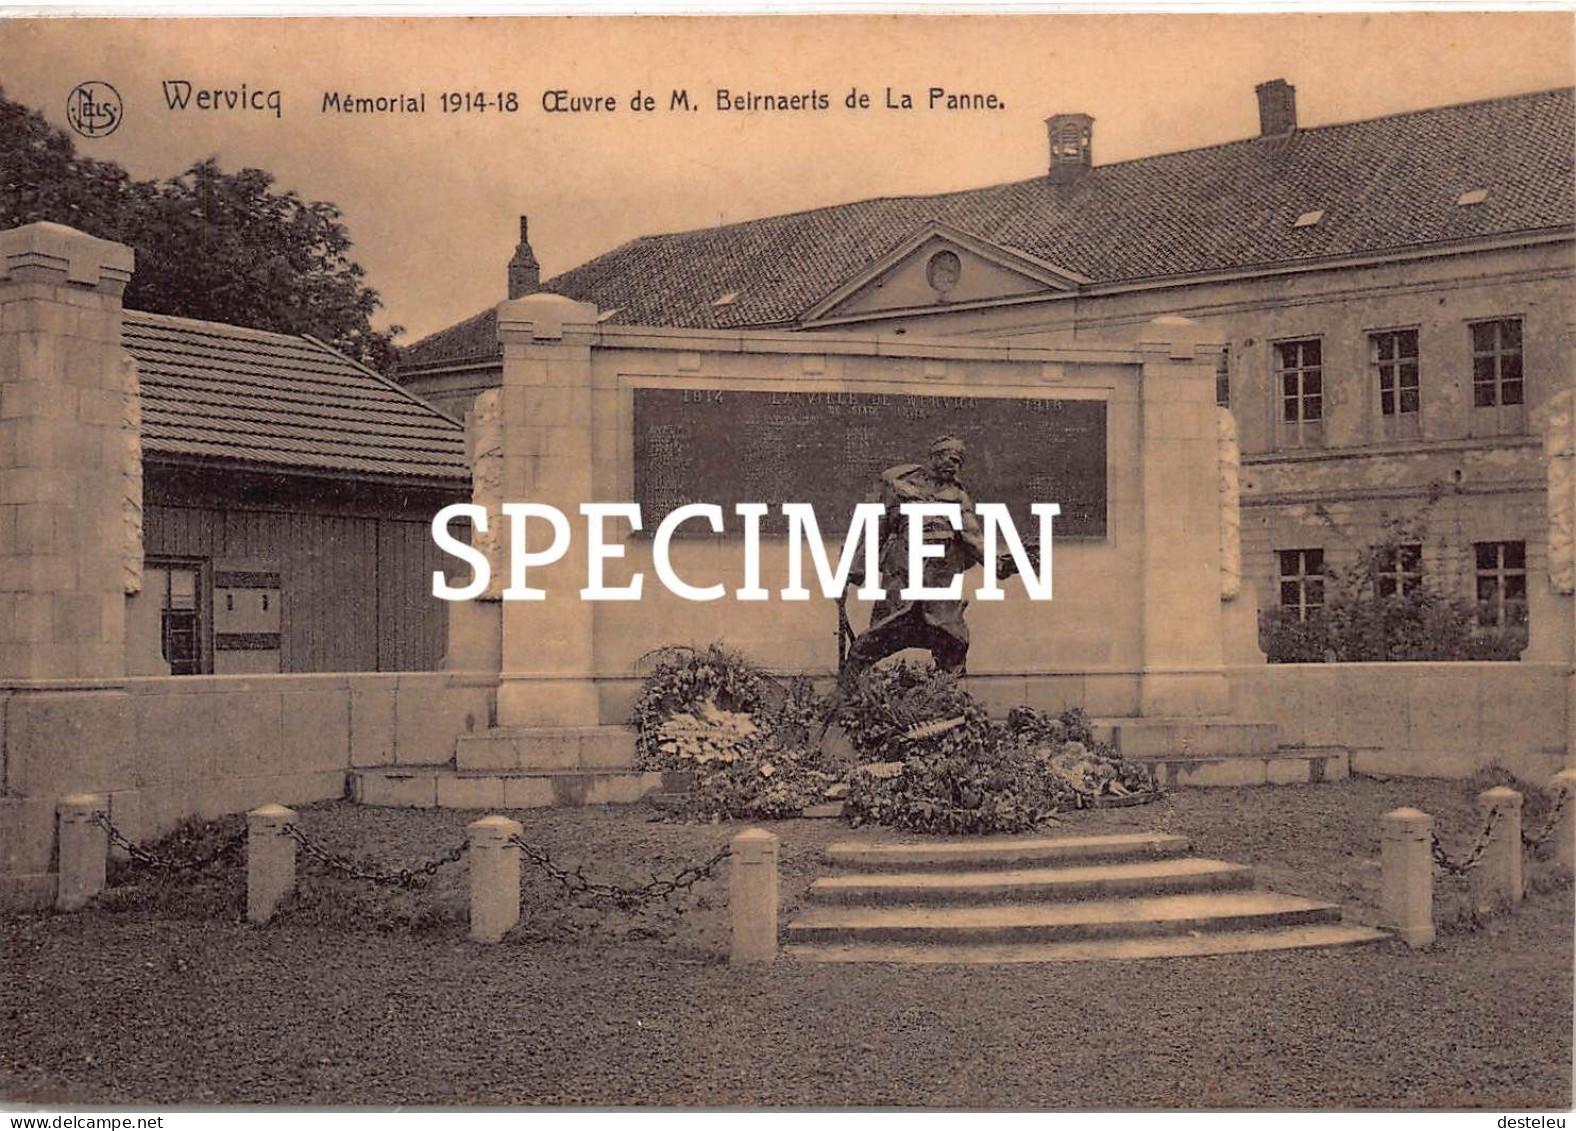 Mémorial 1914-18 Oeuvre De M. Beirnaerts De La Panne - Wervicq - Wervik - Wervik